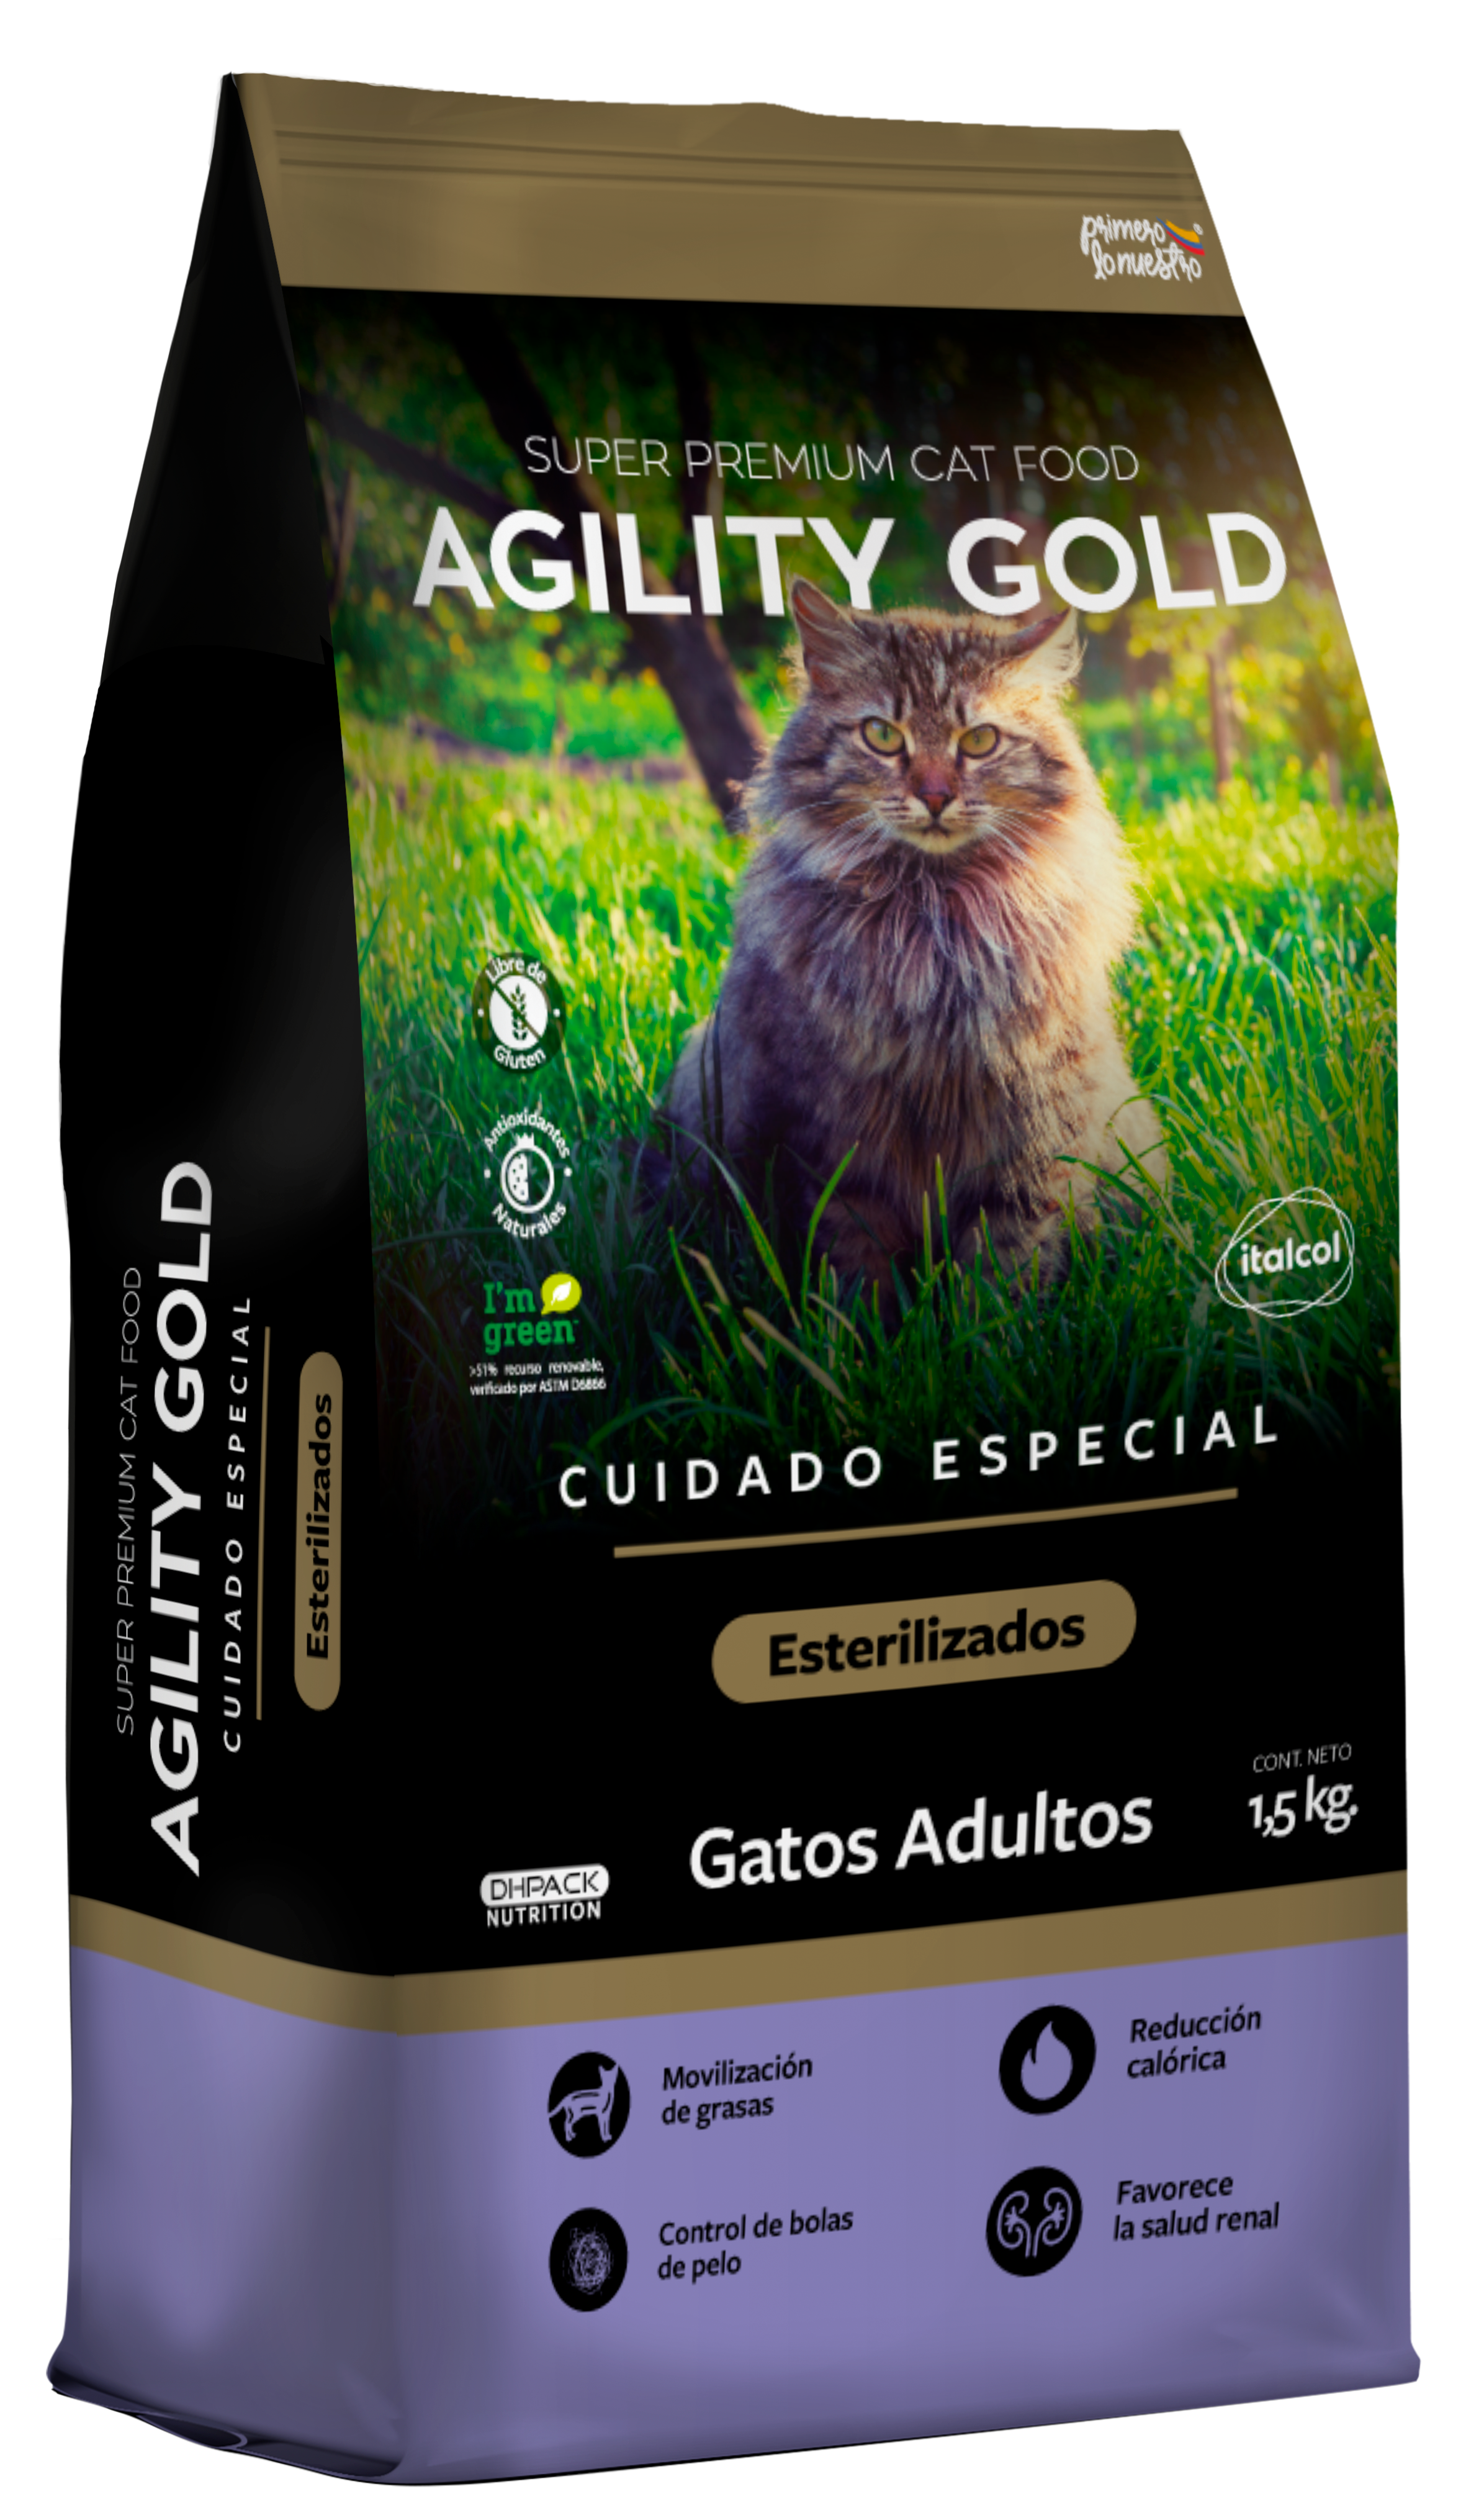 Agility Gold Gatos Esterilizados